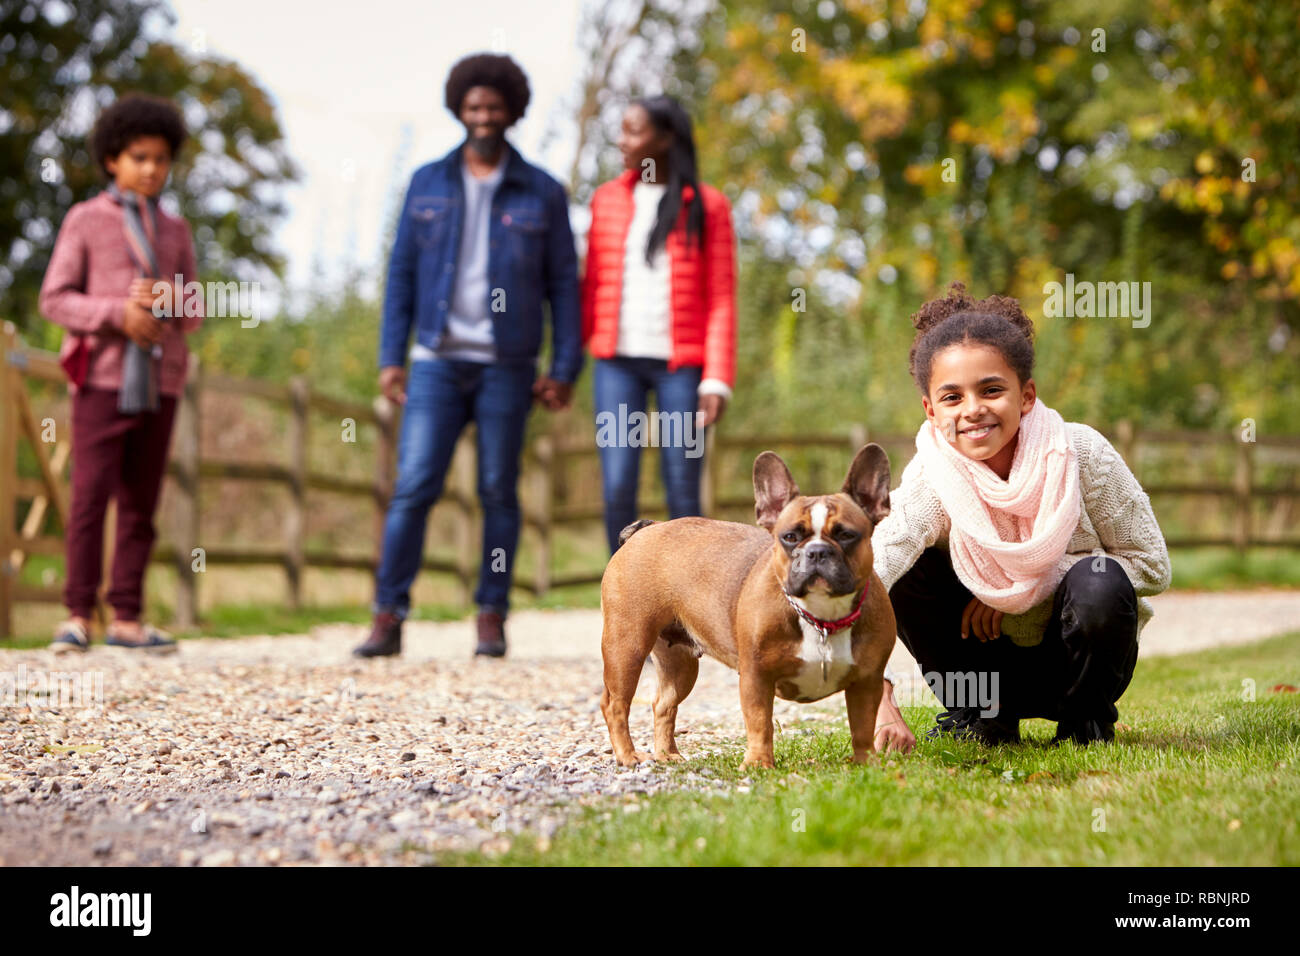 Mixed Race girl accroupis au pet son chien au cours d'une promenade familiale dans la campagne à la recherche d'appareil photo, low angle Banque D'Images